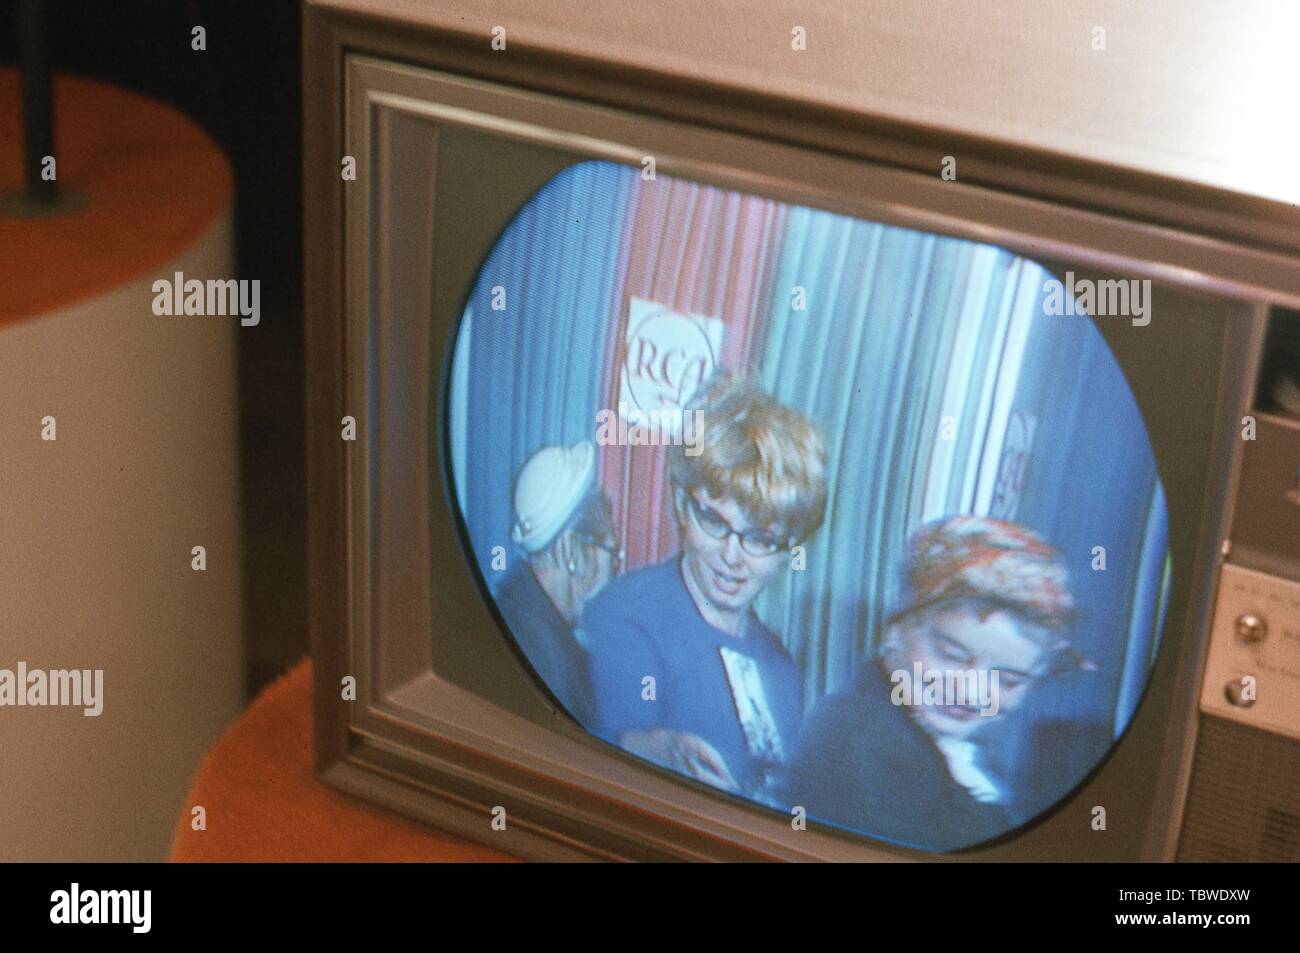 Besucher sehen sich Broadcast in Farbe zum ersten Mal vom Monitor Sets Futter der Eingang zum Fernseher Communications Center Exponat auf der RCA-Pavillon der Messe in New York World's, Flushing Meadows, Queens, New York, August, 1965. () Stockfoto